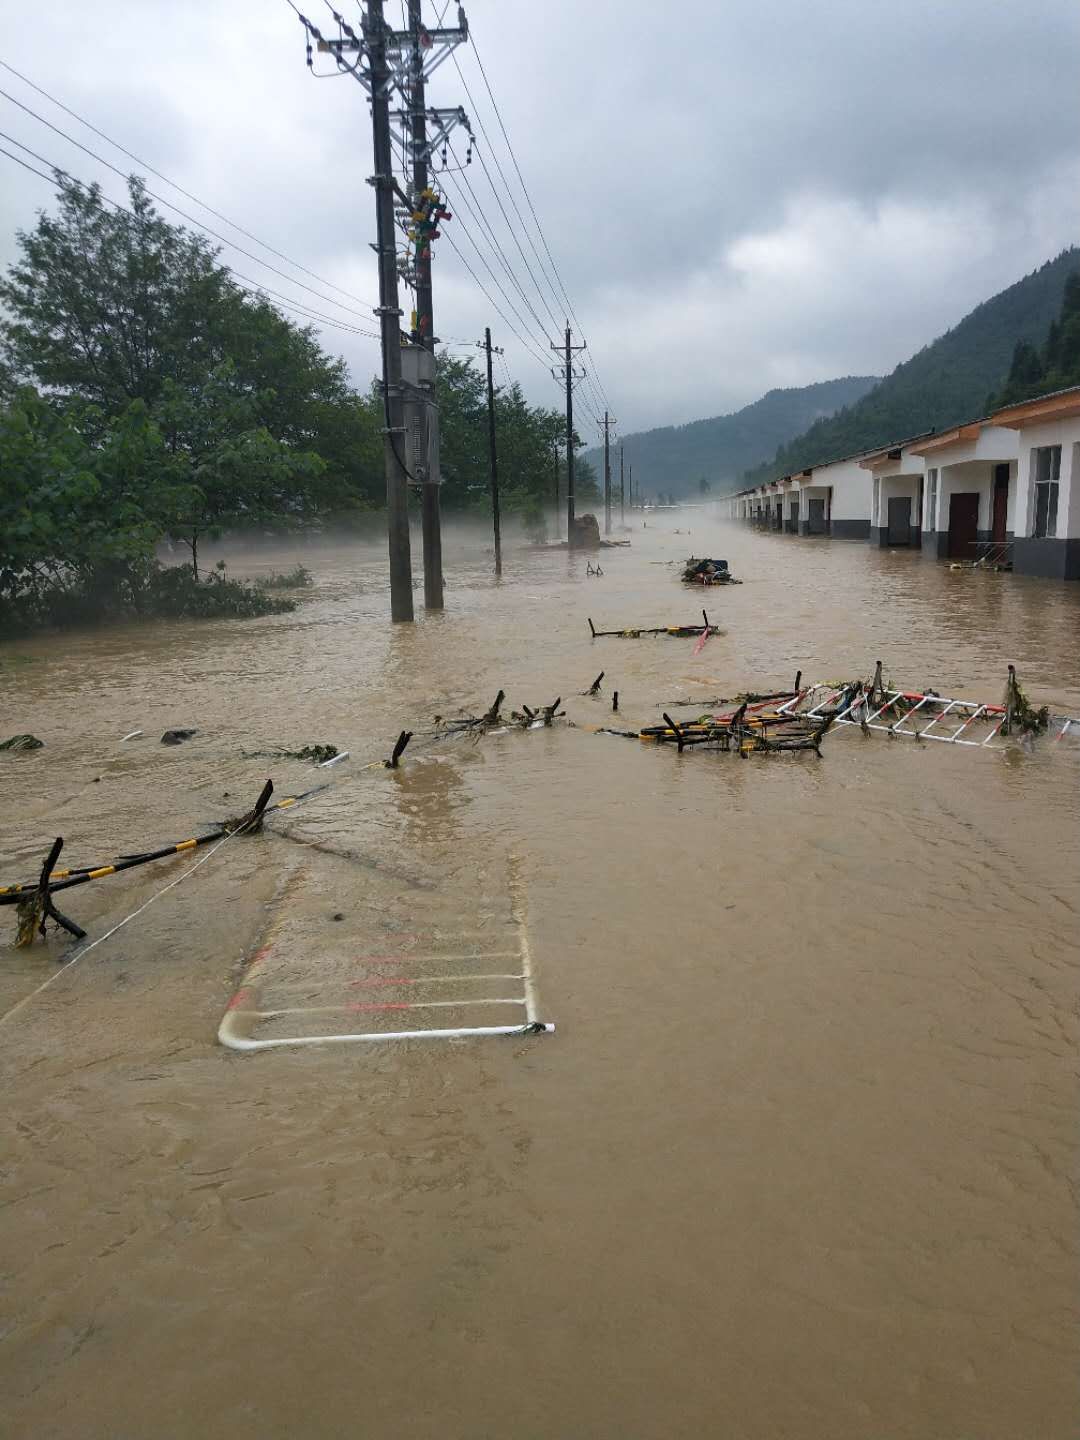 鹤峰县普降大雨,中营镇降雨量超过104mm,洪水漫过河堤涌上街道造成